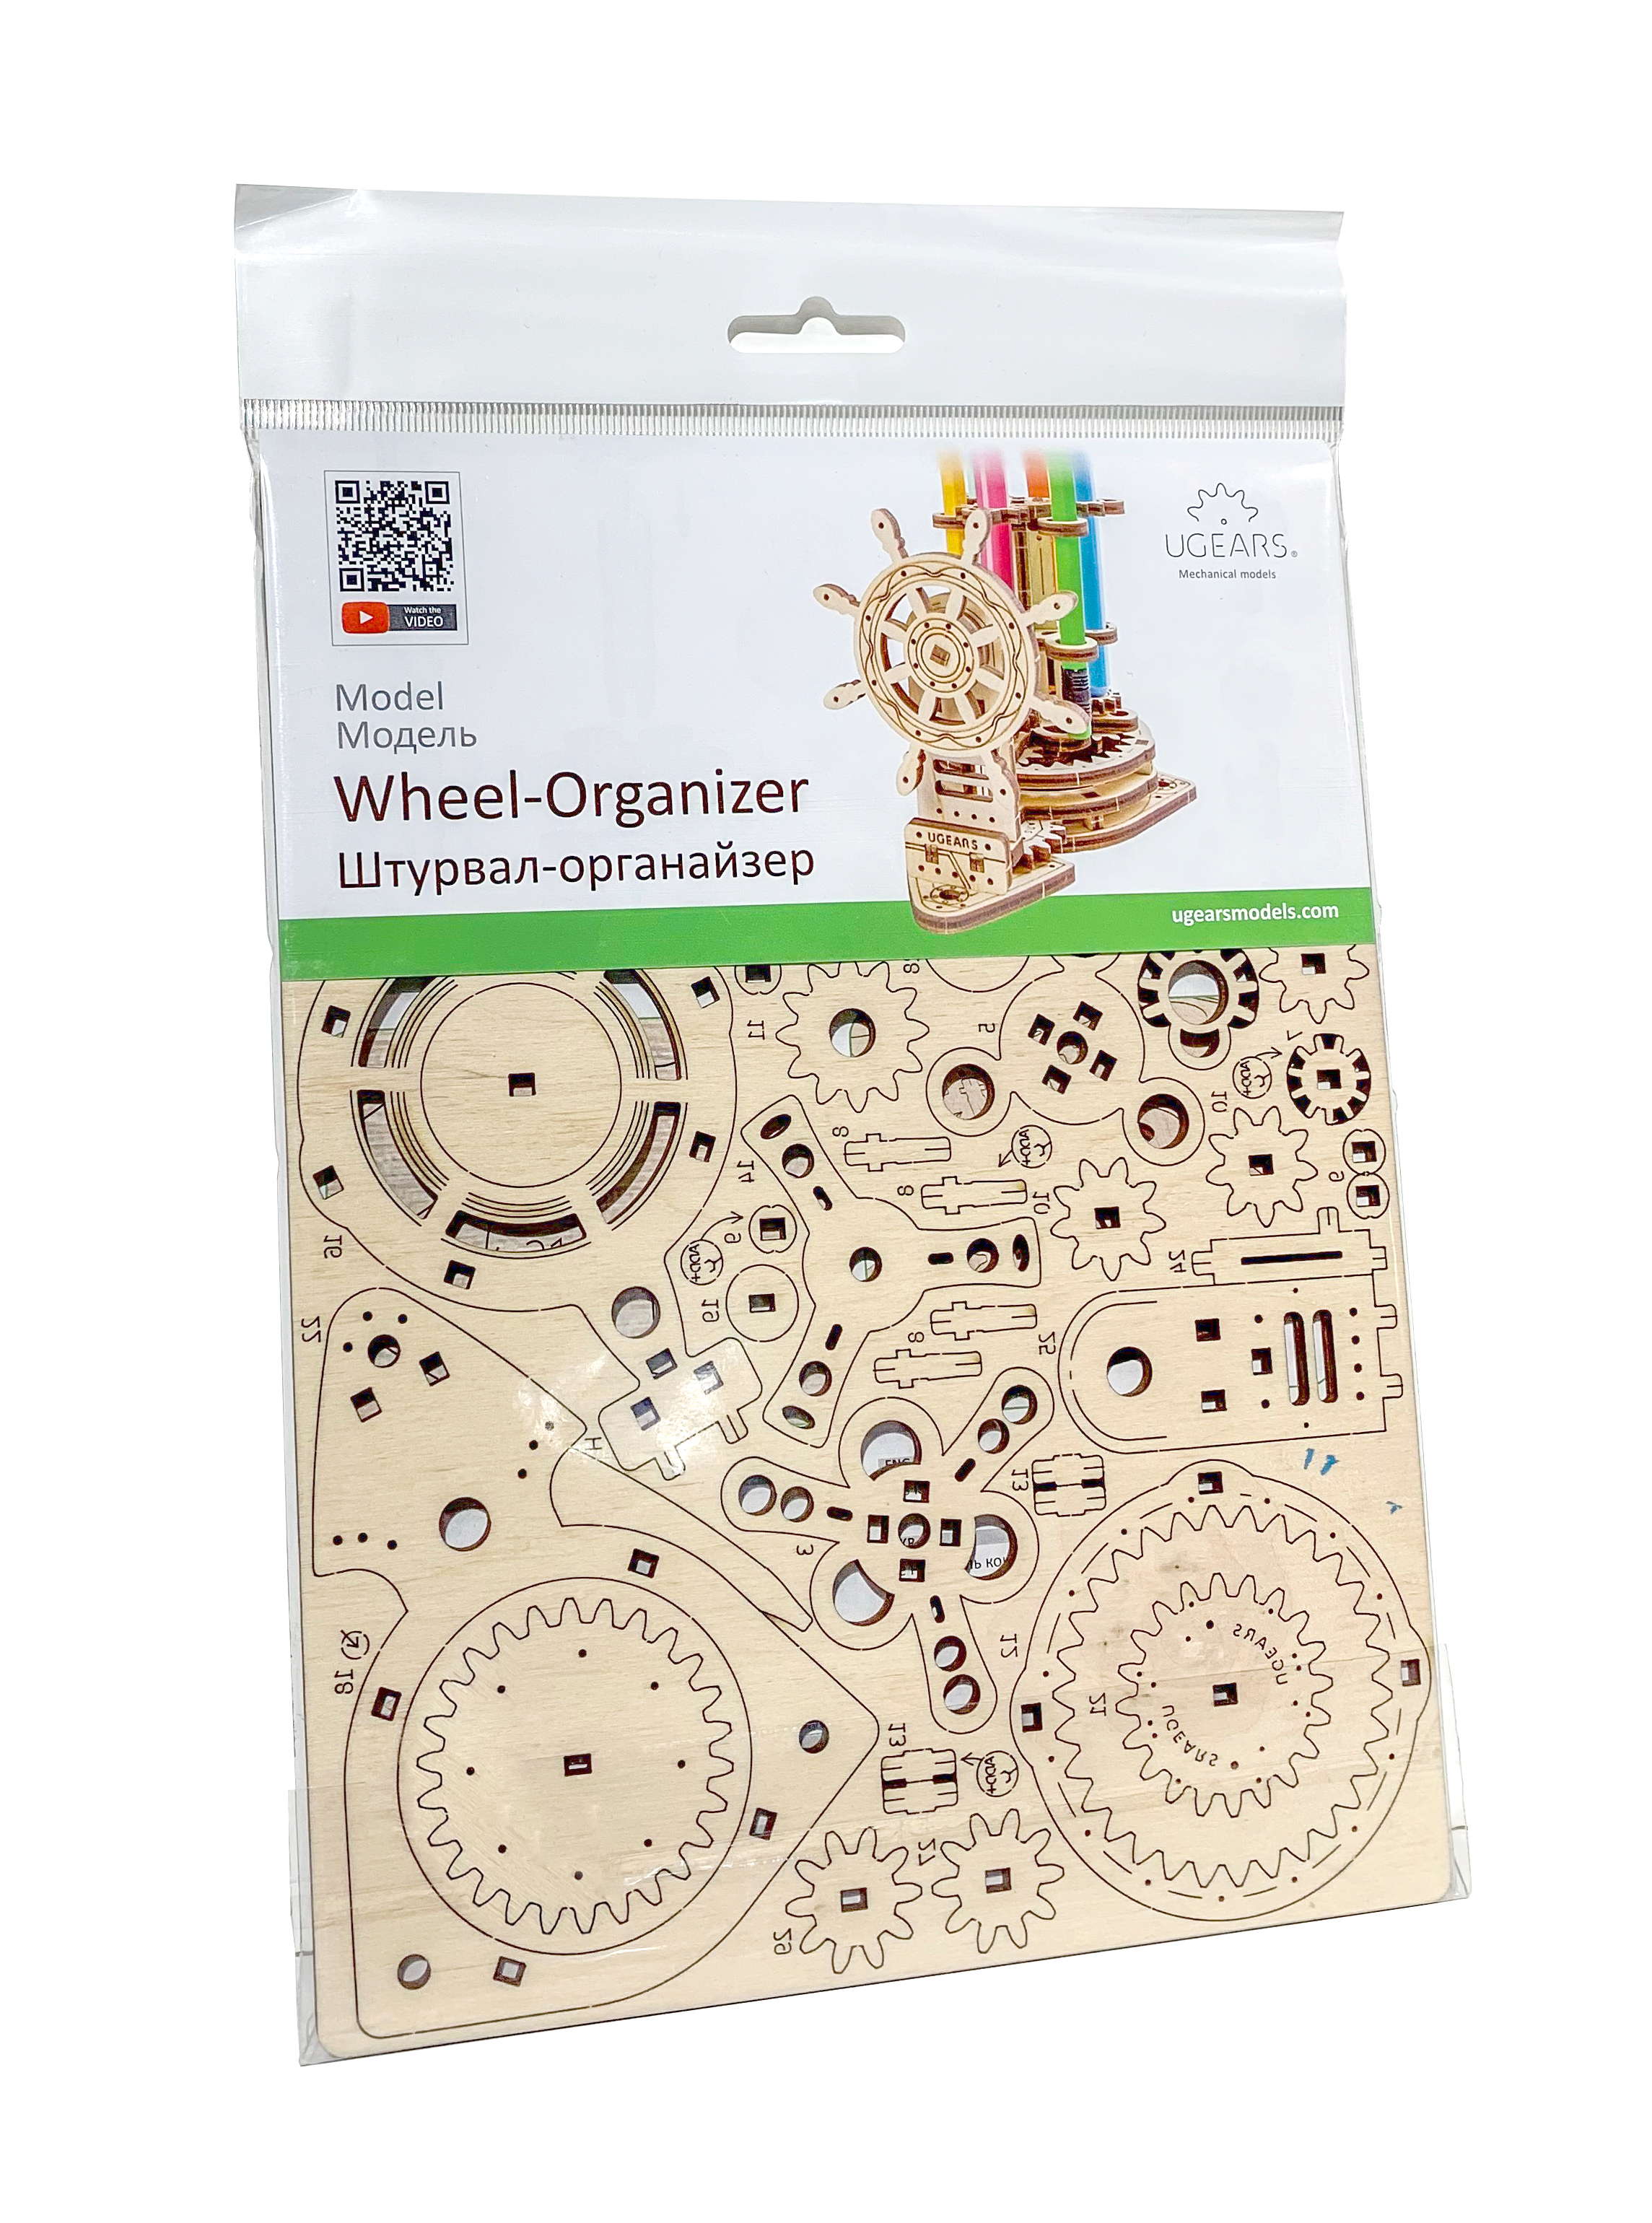 Mô hình gỗ cơ khí - Ugears Wheel Organizer- Ống bút bánh lái, hàng chính hãng UGEARS, nhập khẩu nguyên bộ từ EU, mô hình lắp ráp 3D, DYI